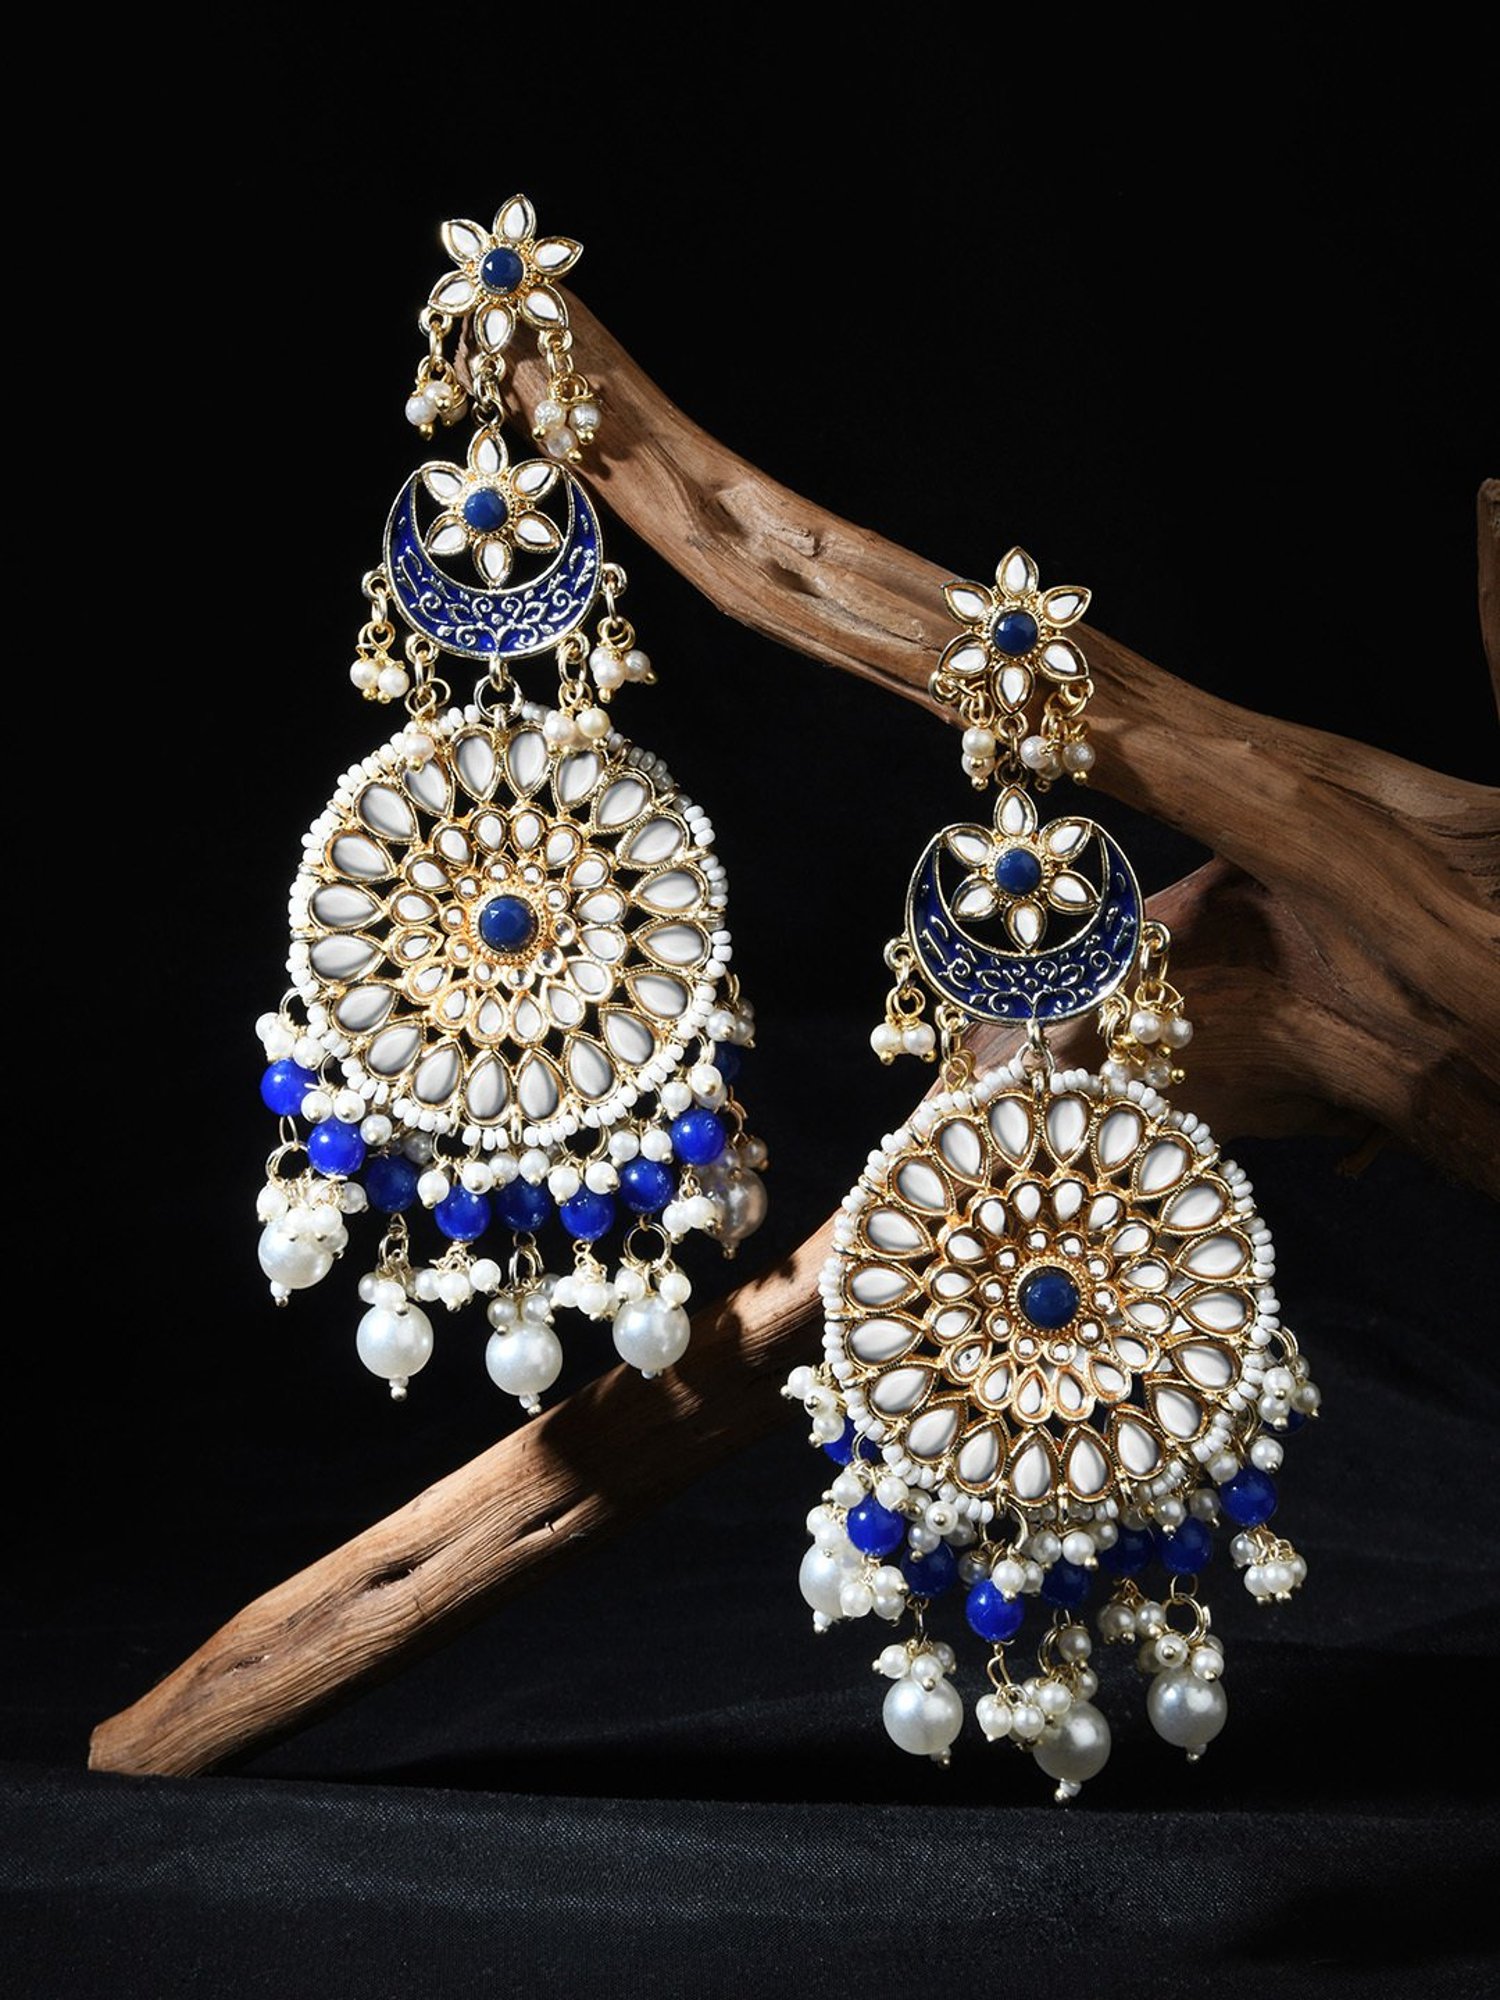 Buy Blue Navy Earrings, Navy Blue Earrings, Dark Blue Crystal Earrings,  Bridal Navy Stud Earrings, Bridesmaids Earrings,midnight Blue Earrings  Online in India - Etsy